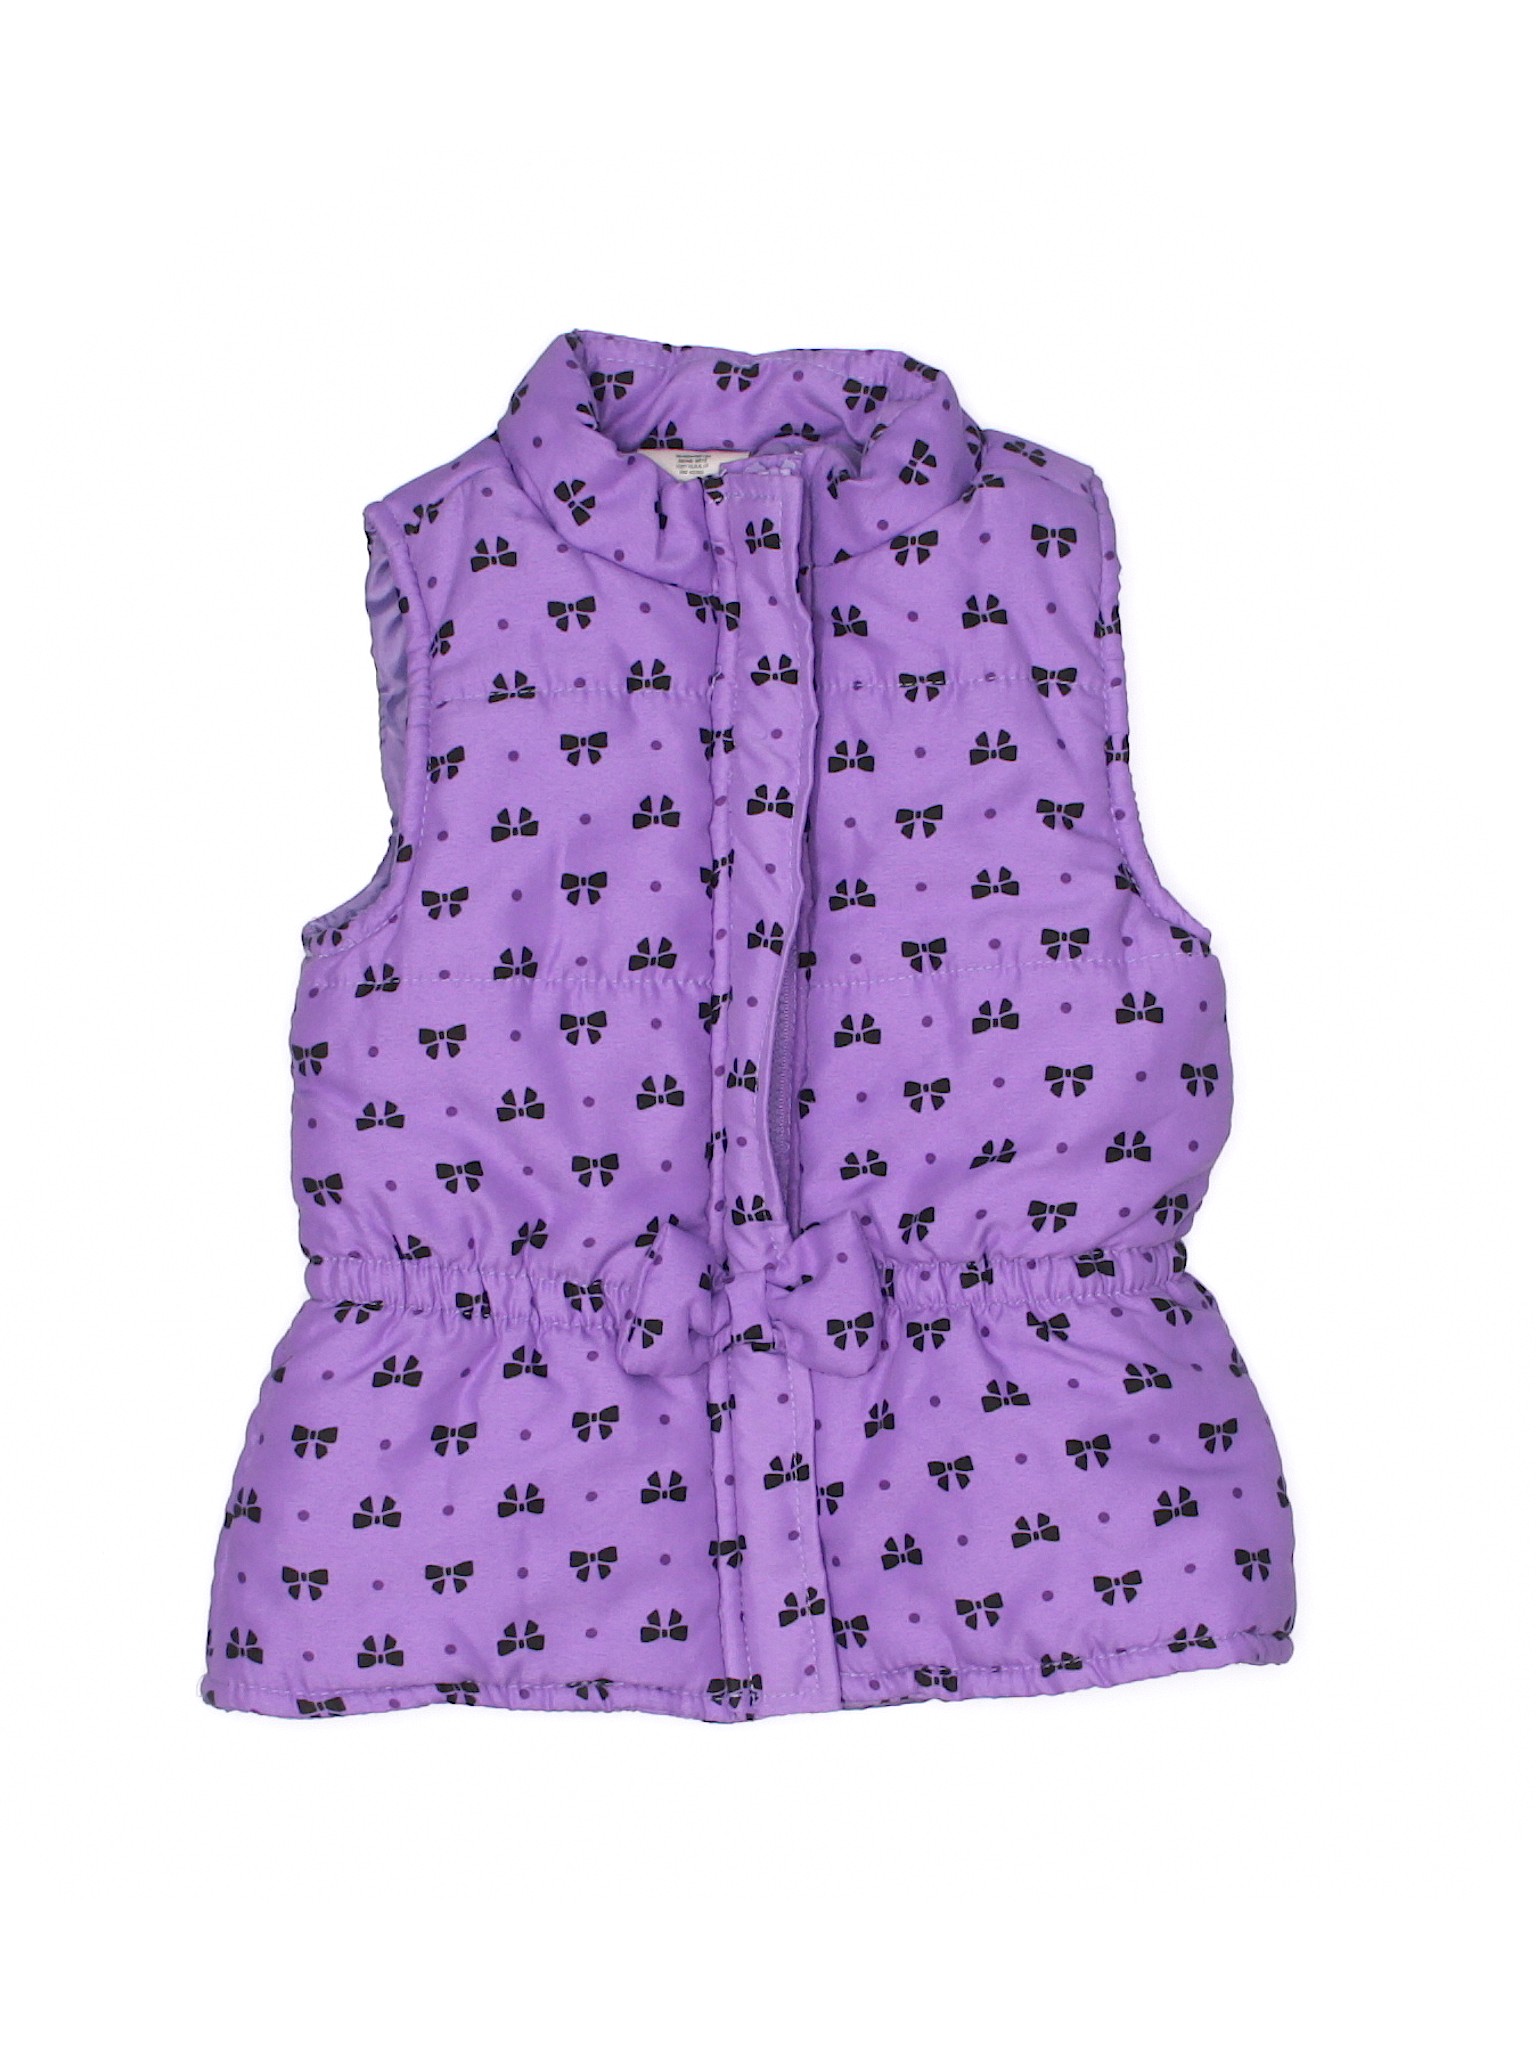 WonderKids Girls Purple Vest 4T | eBay